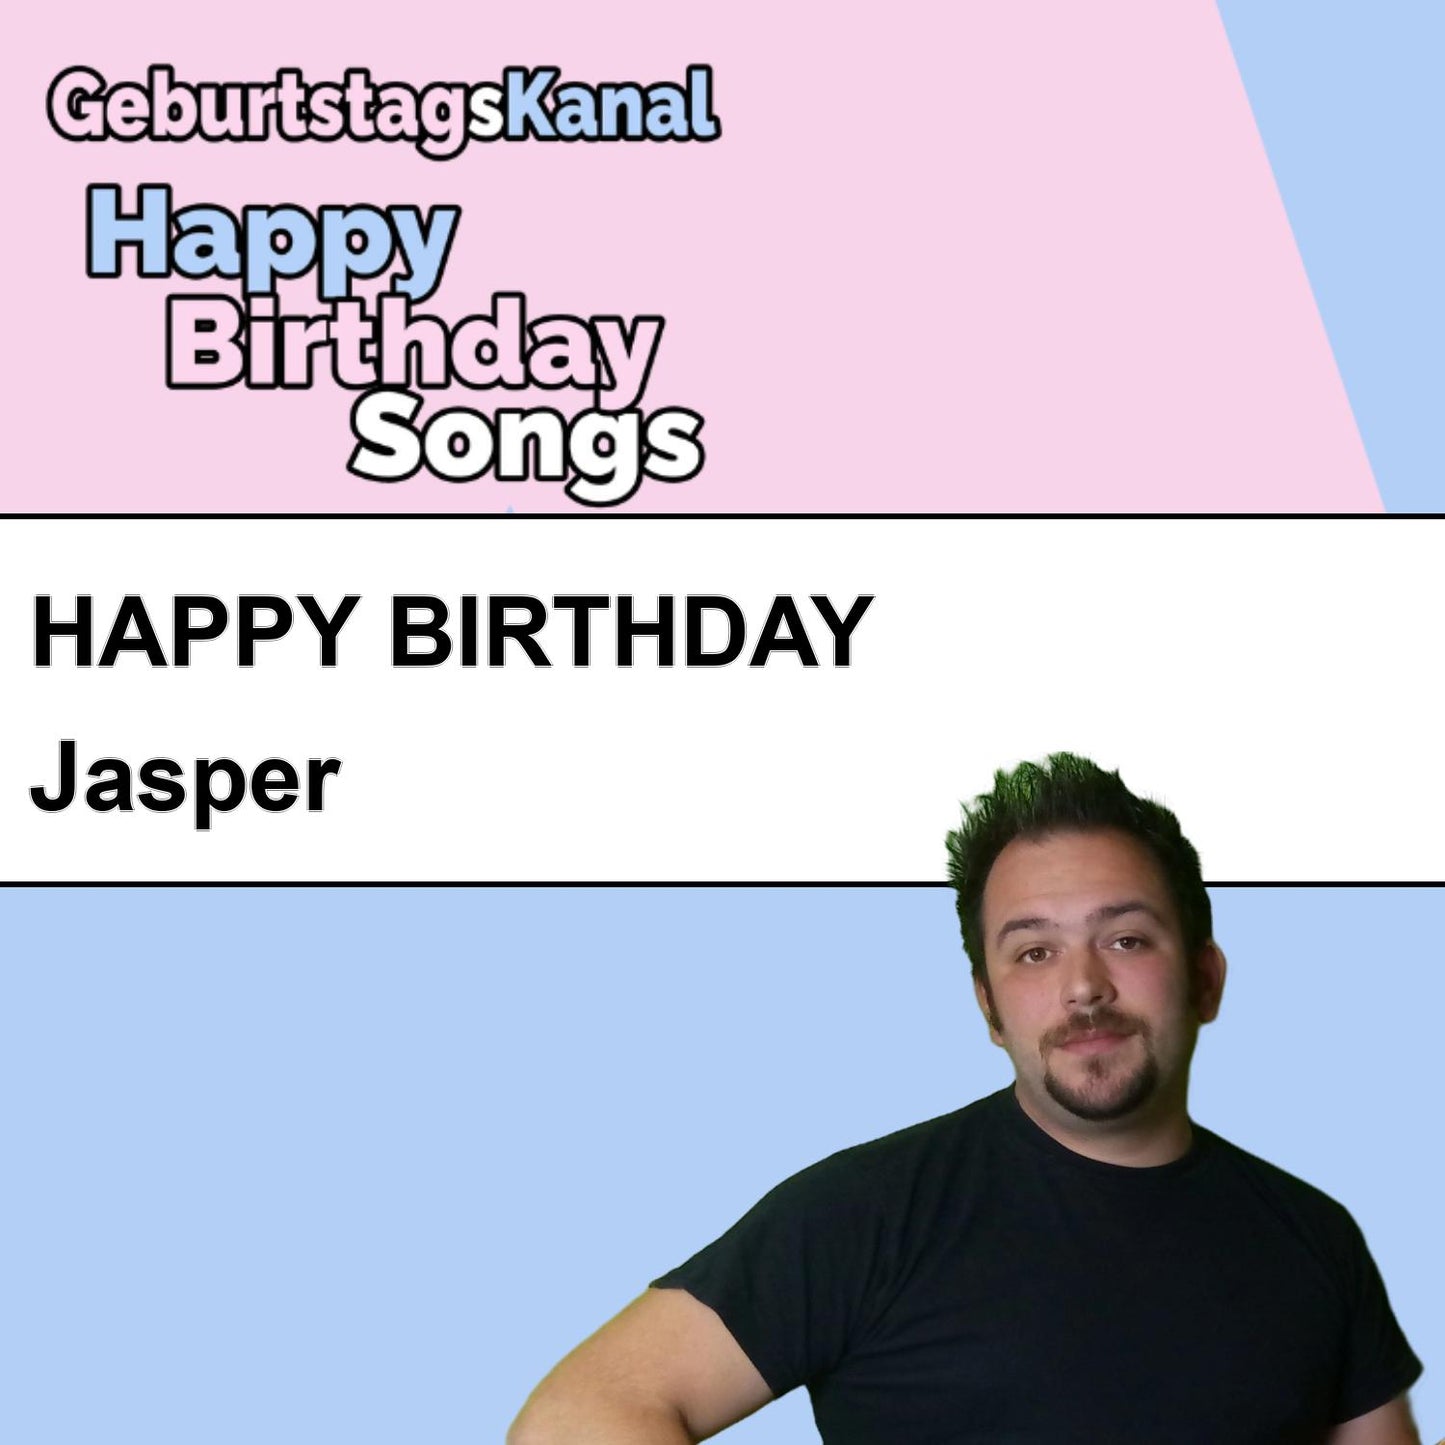 Produktbild Happy Birthday to you Jasper mit Wunschgrußbotschaft